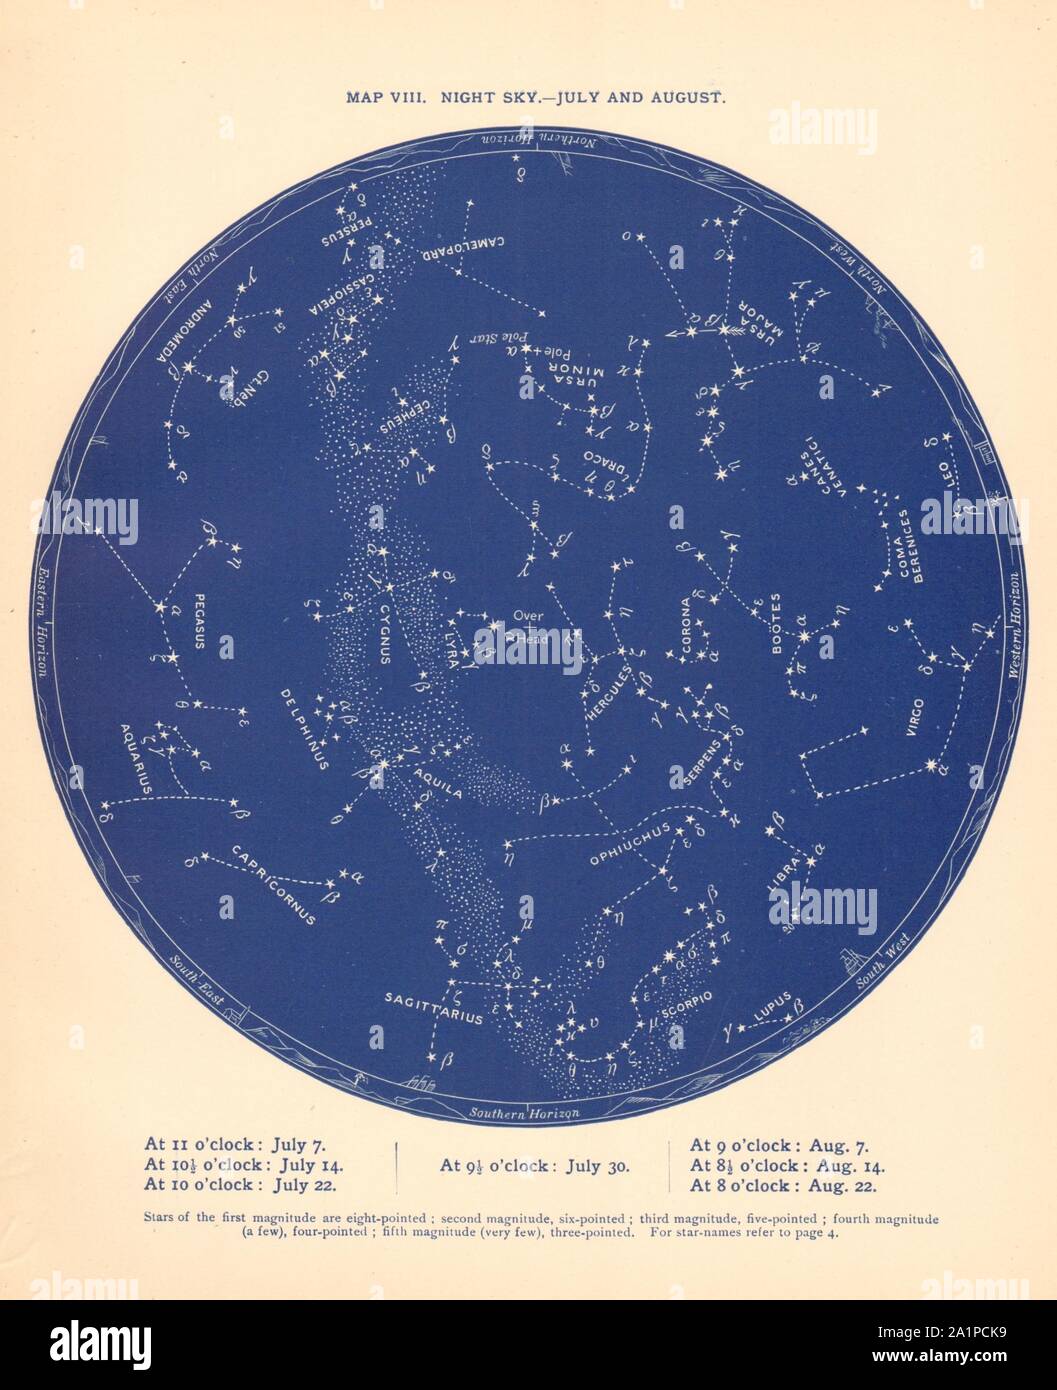 STAR MAPPA VIII. Il cielo di notte. Luglio-agosto. Astronomia. PROCTOR 1887 vecchio Foto Stock